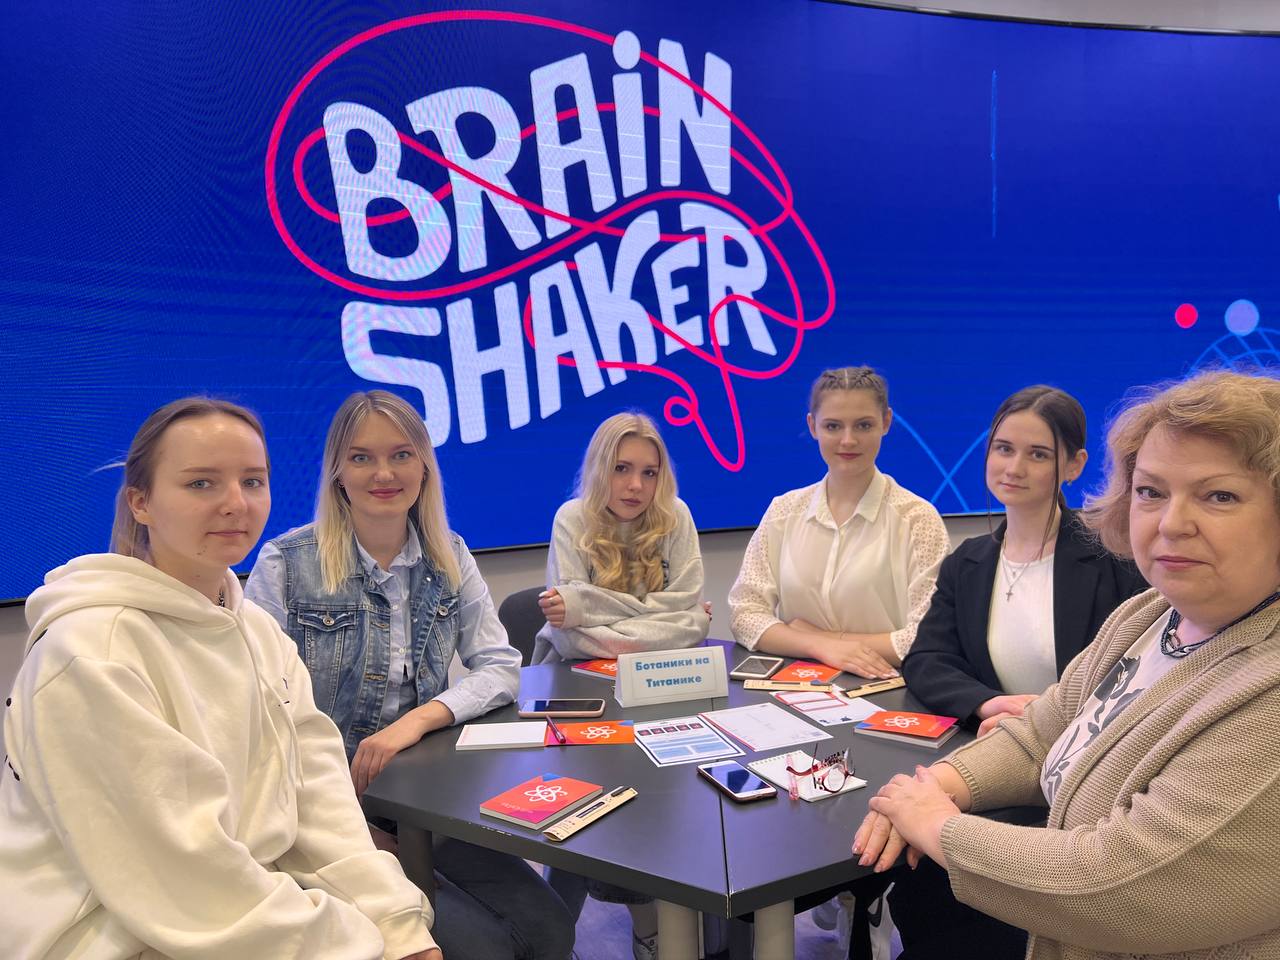 Участие в Турнире “Brain Shaker”